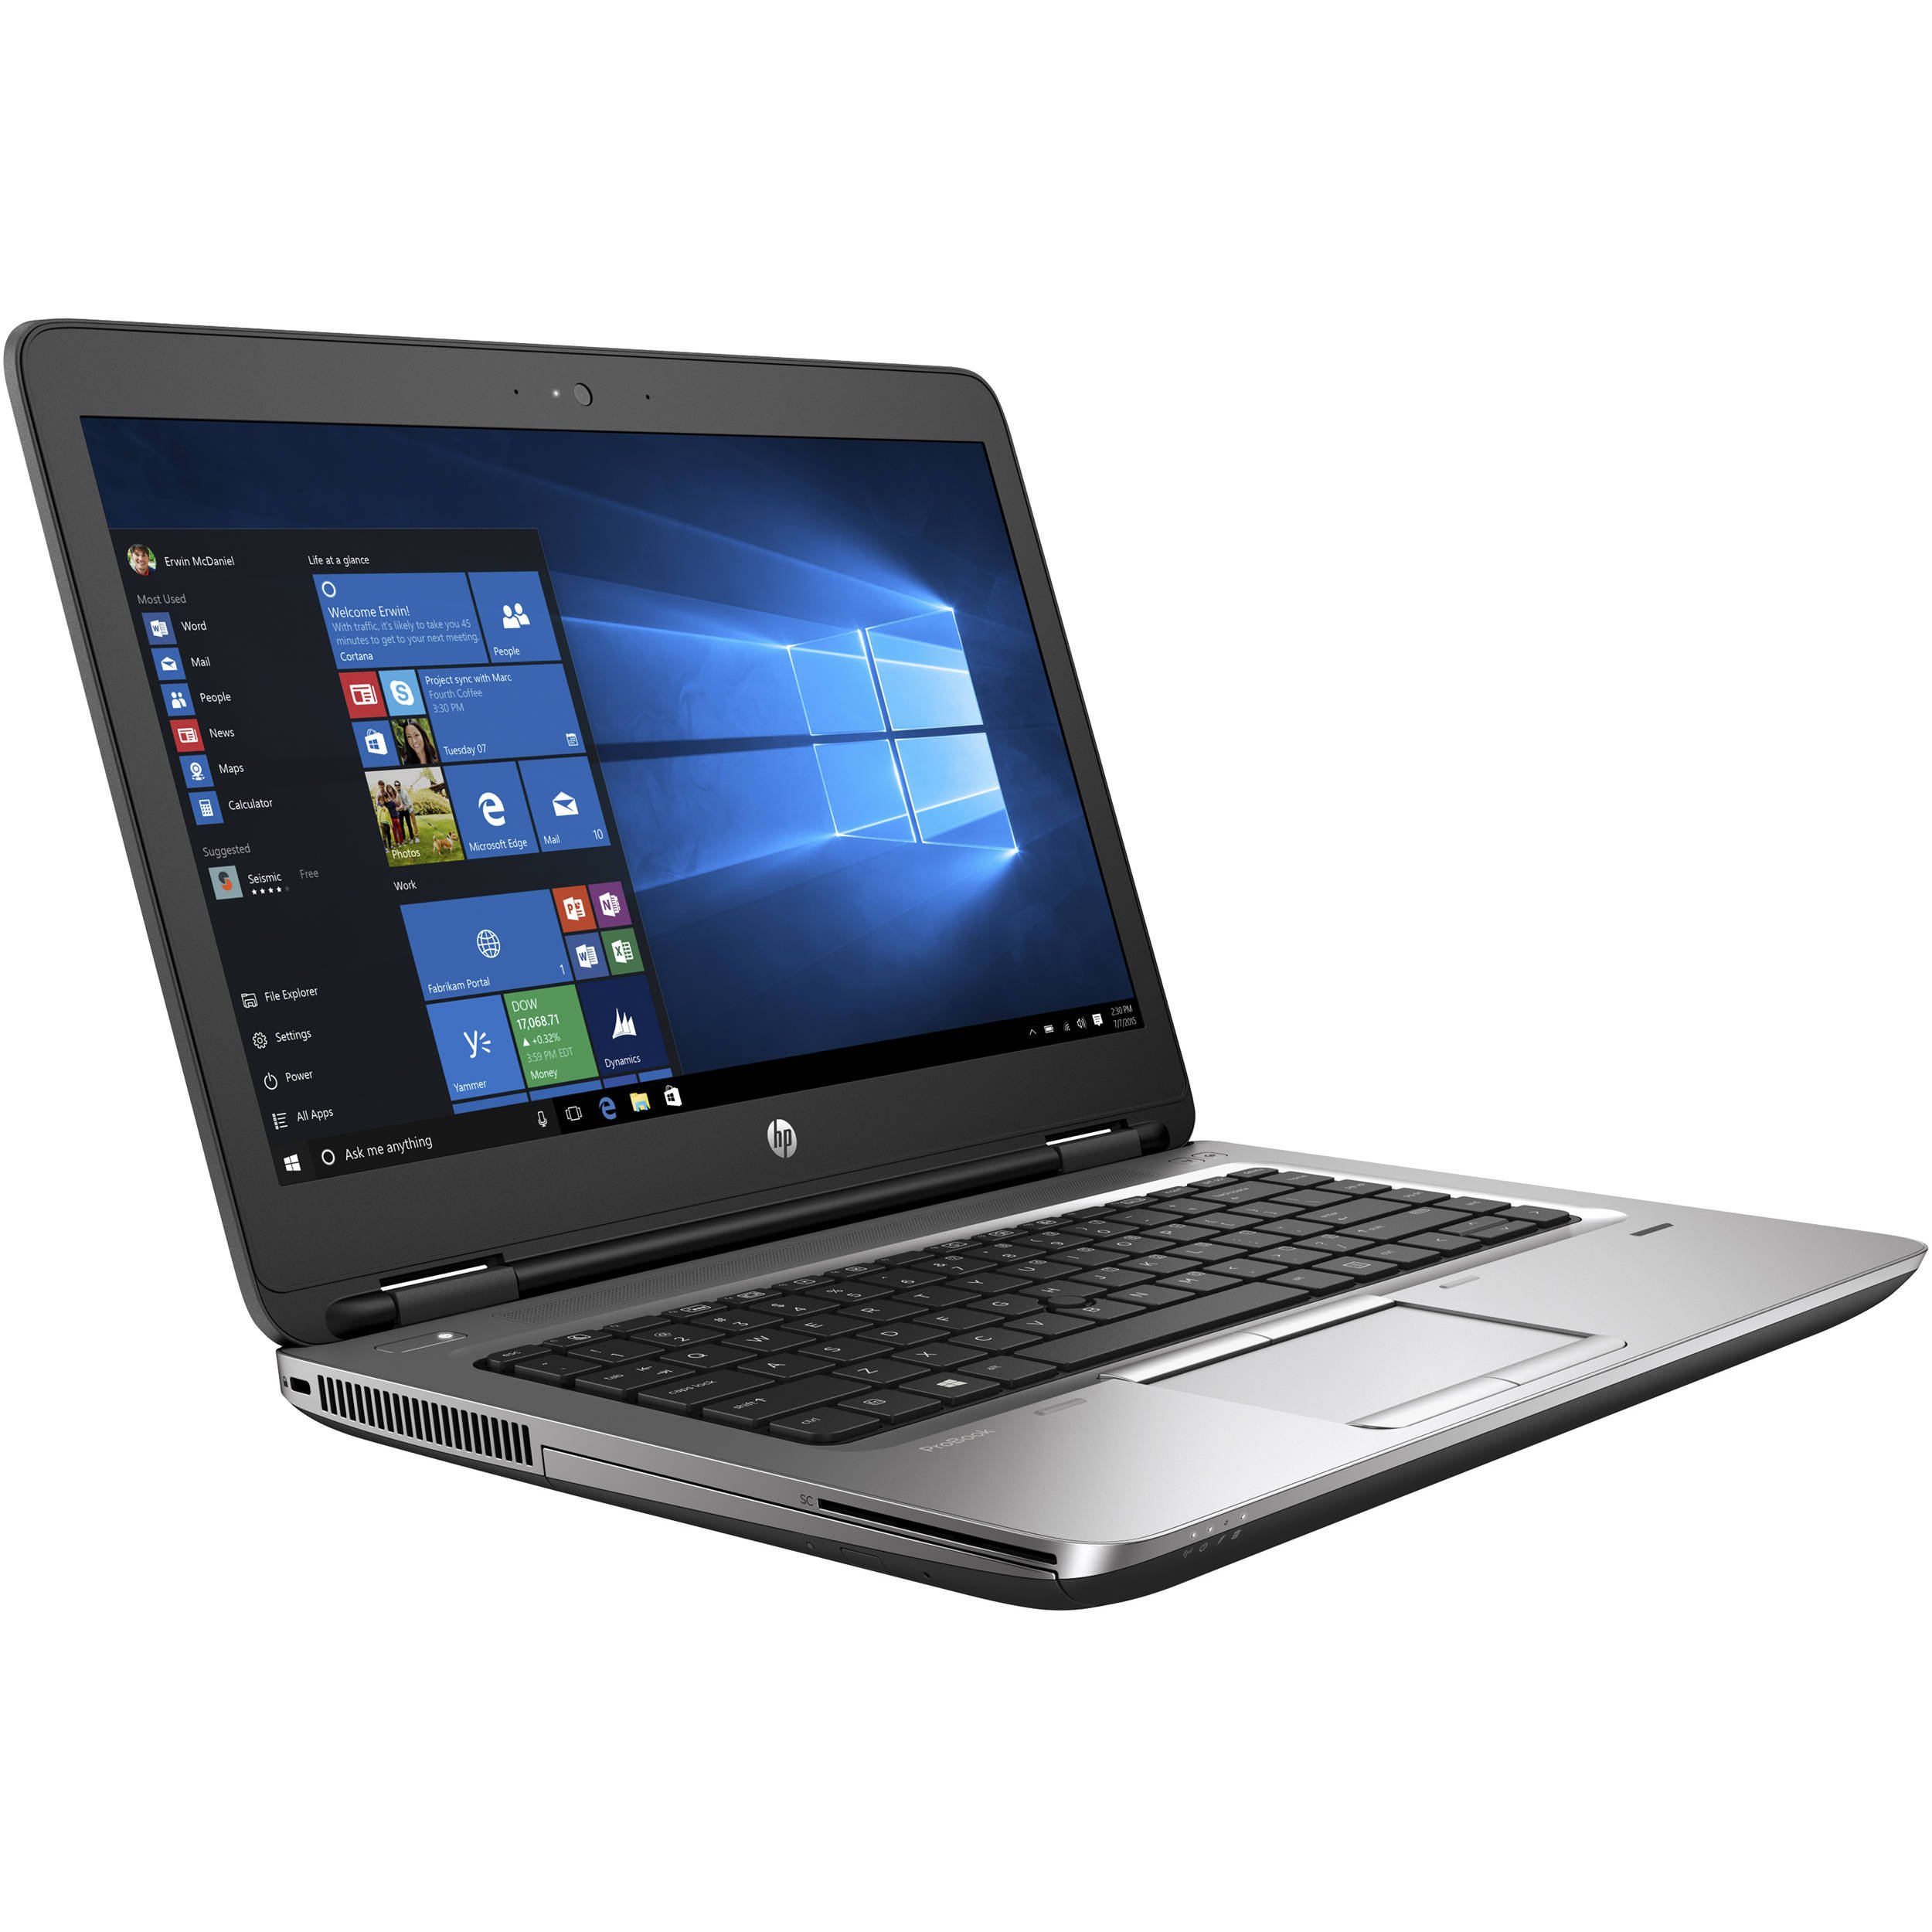 ProBook 650 G3 Notebook PC